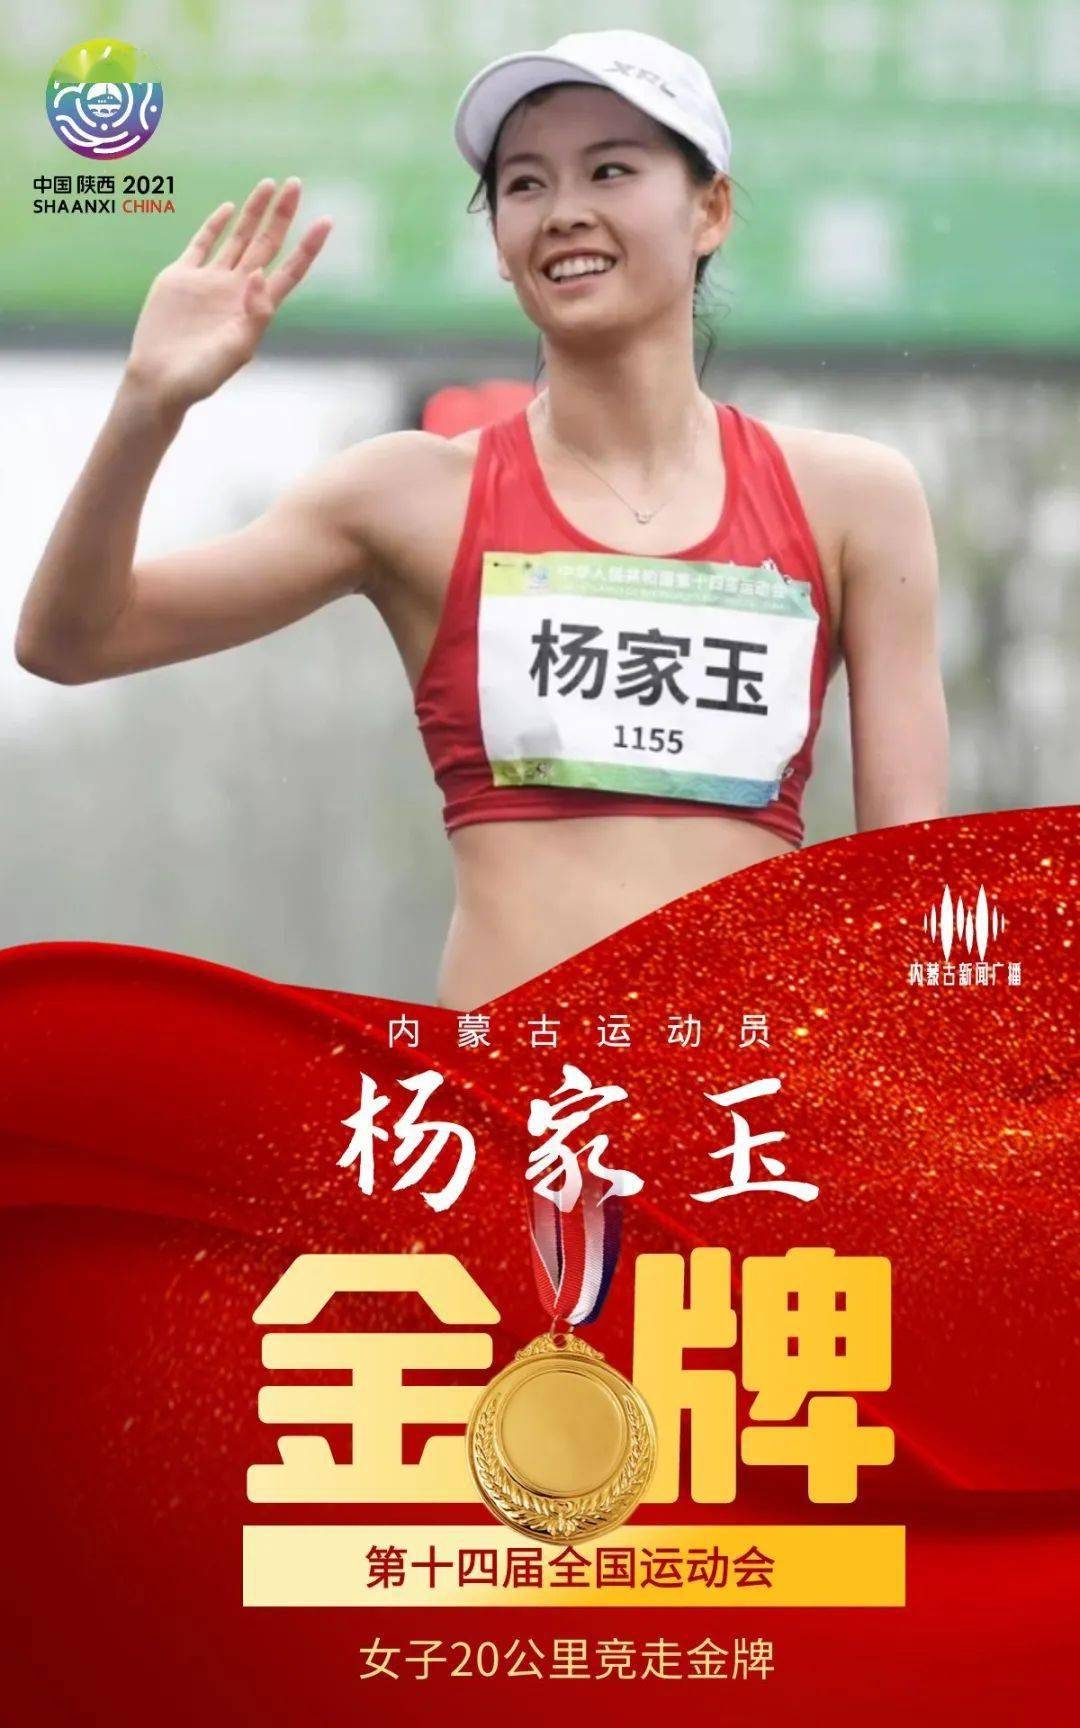 捷报!杨家玉卫冕全运会20公里竞走冠军!